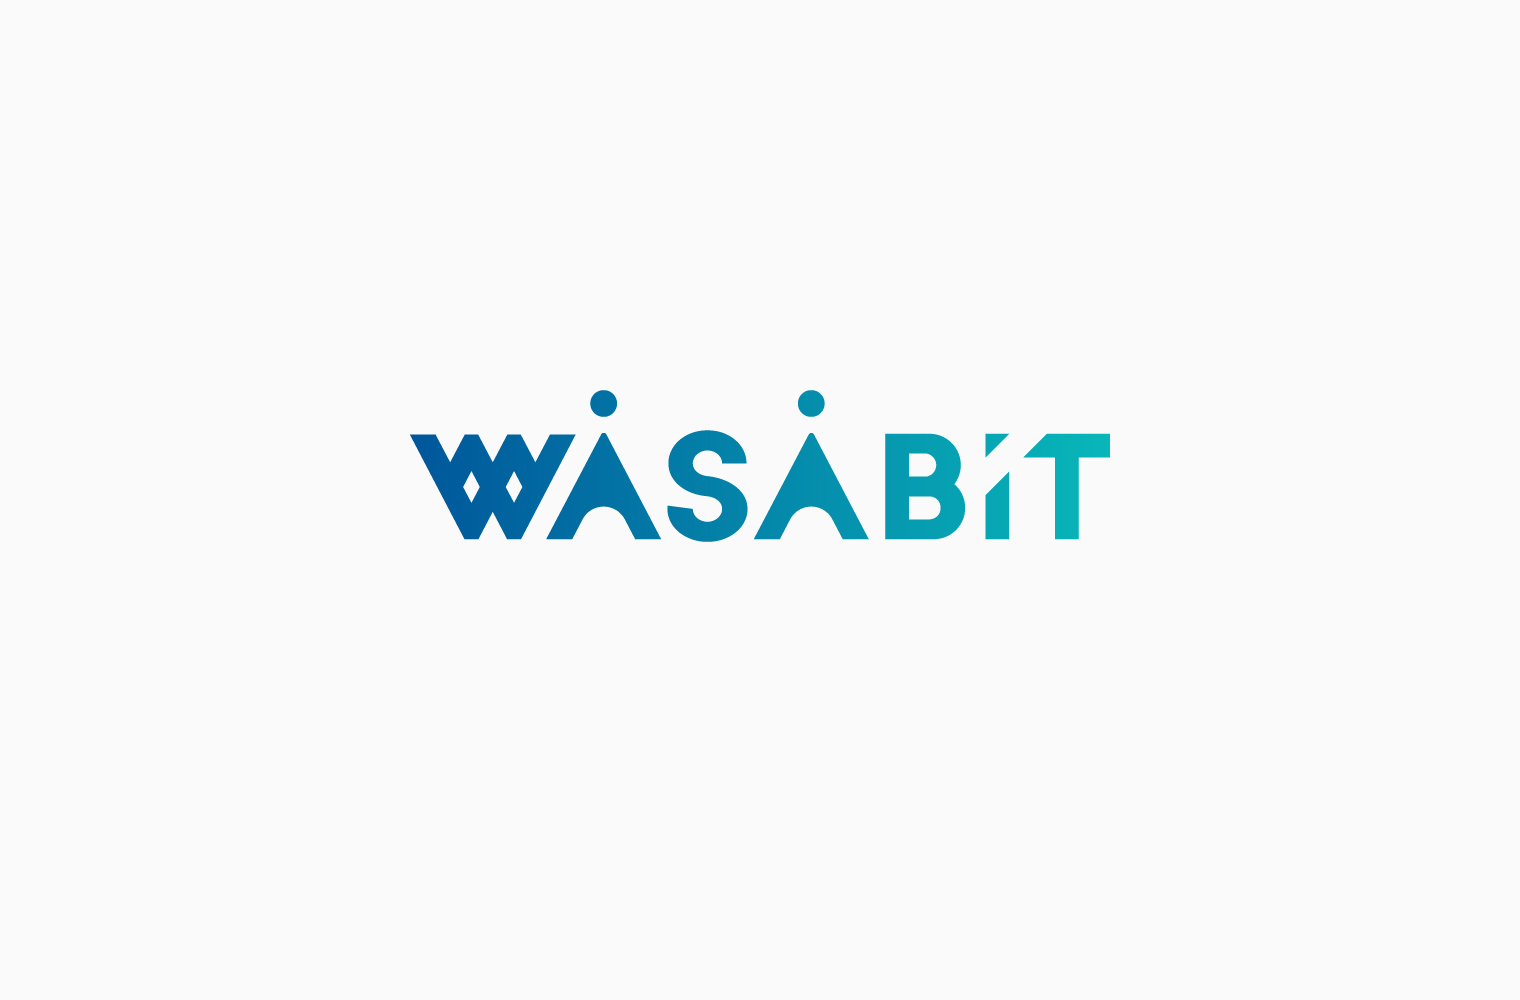 WASABIT ブランディング ロゴデザイン